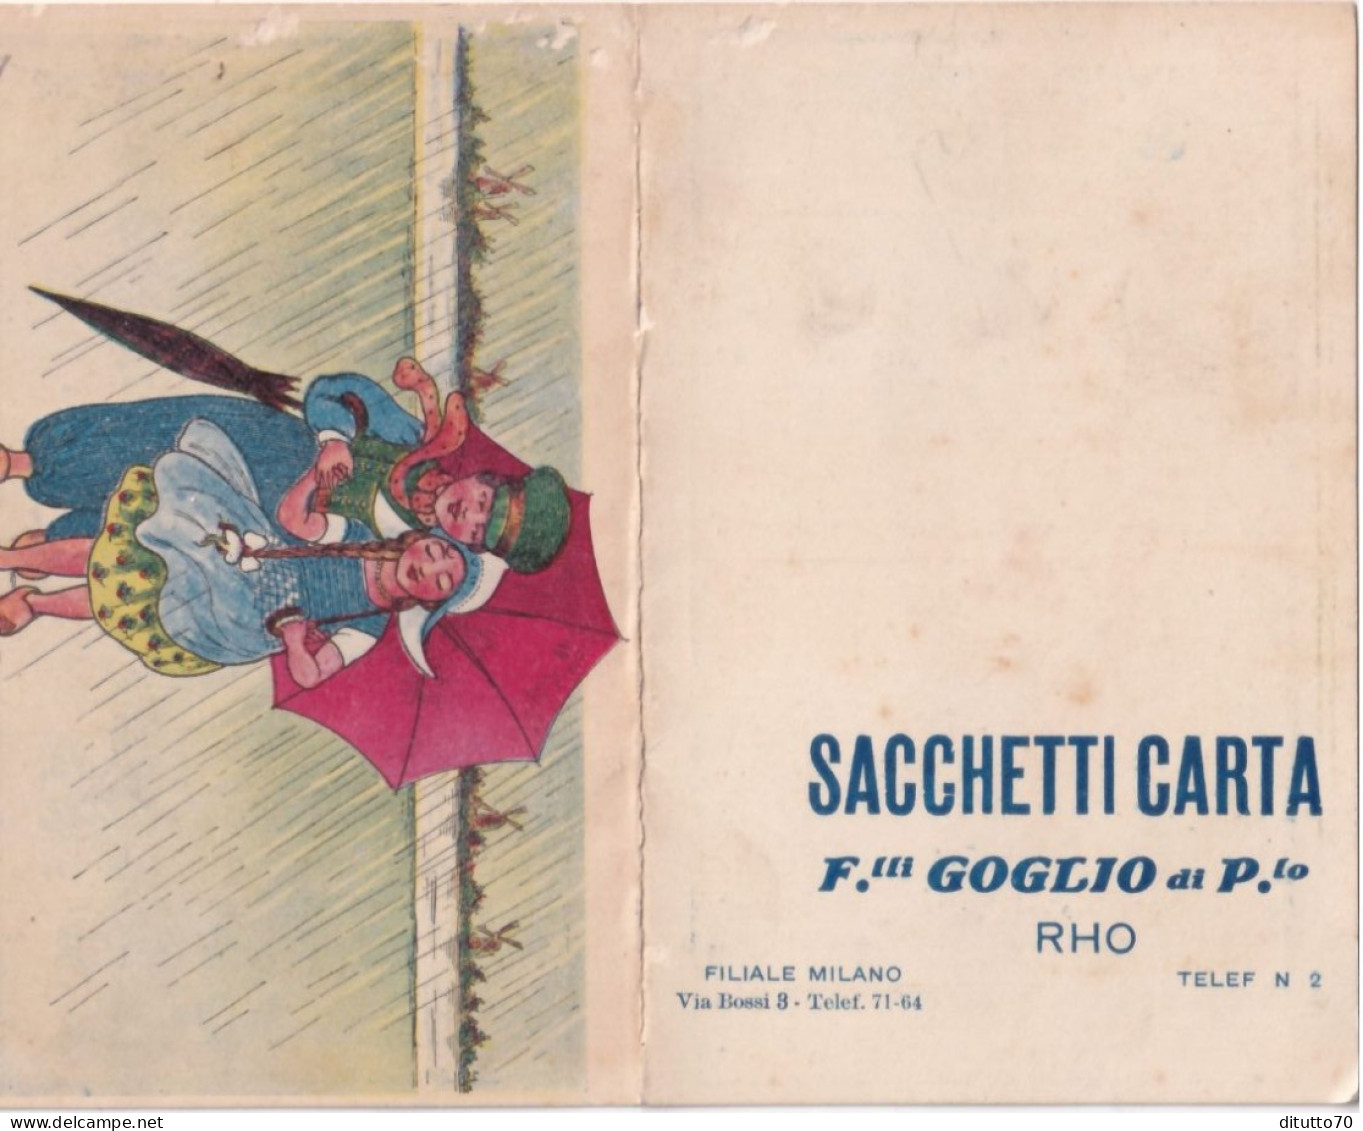 Calendarietto - Sacchetti Carta - F.lli Goglio Di P.lo - Rho - Anno 1915 - Klein Formaat: 1901-20